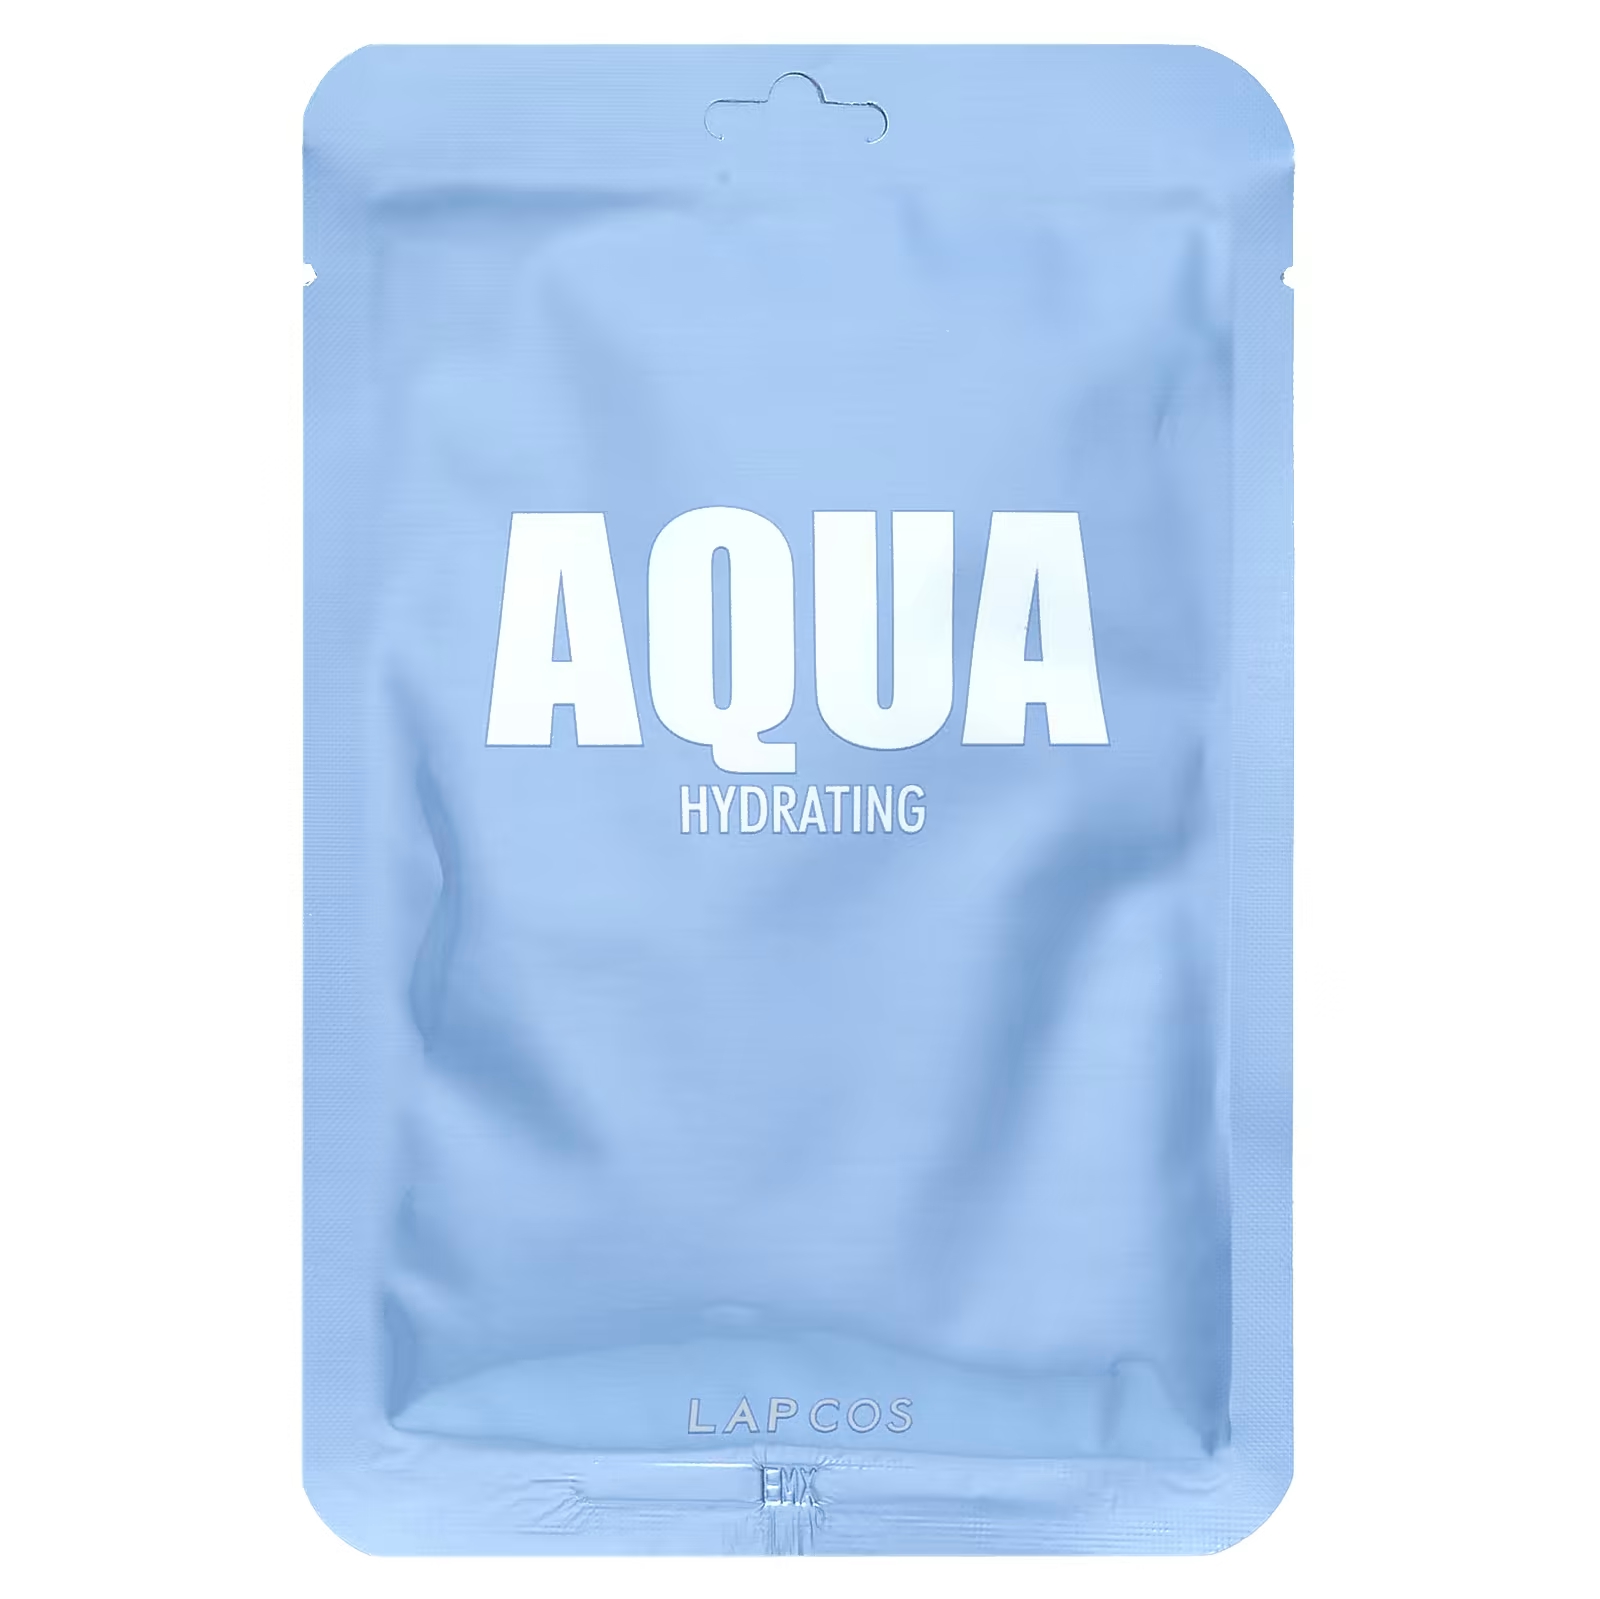 Lapcos Aqua Beauty Тканевая маска, увлажняющая, 1,01 жидкая унция (30 мл)